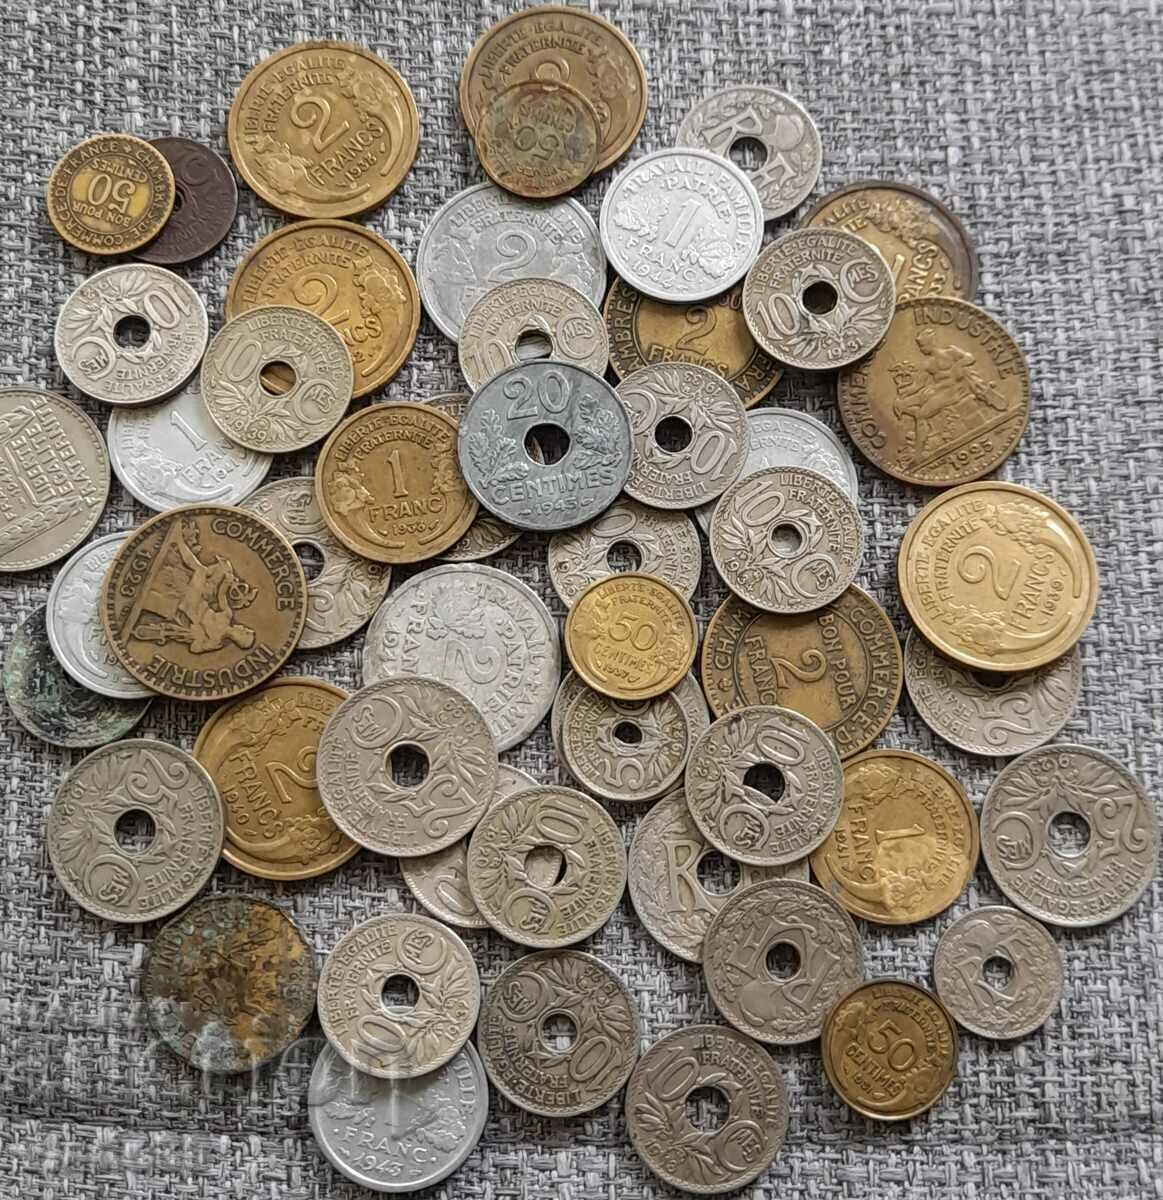 53 de monede franceze vechi din anii 20, 30 și 40 ai secolului XX.